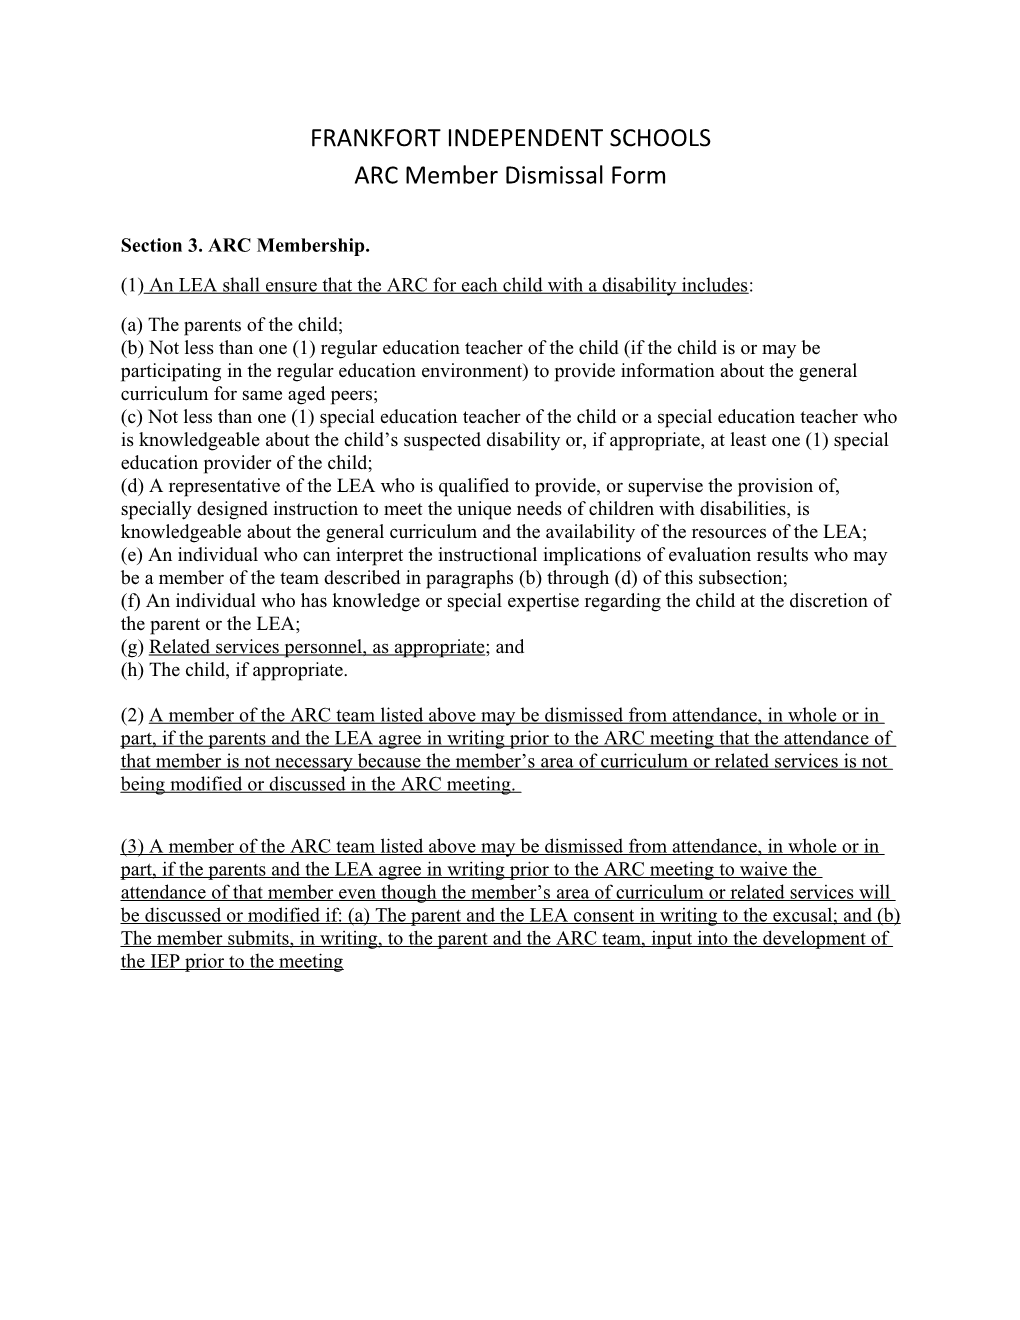 ARC Member Dismissal Form